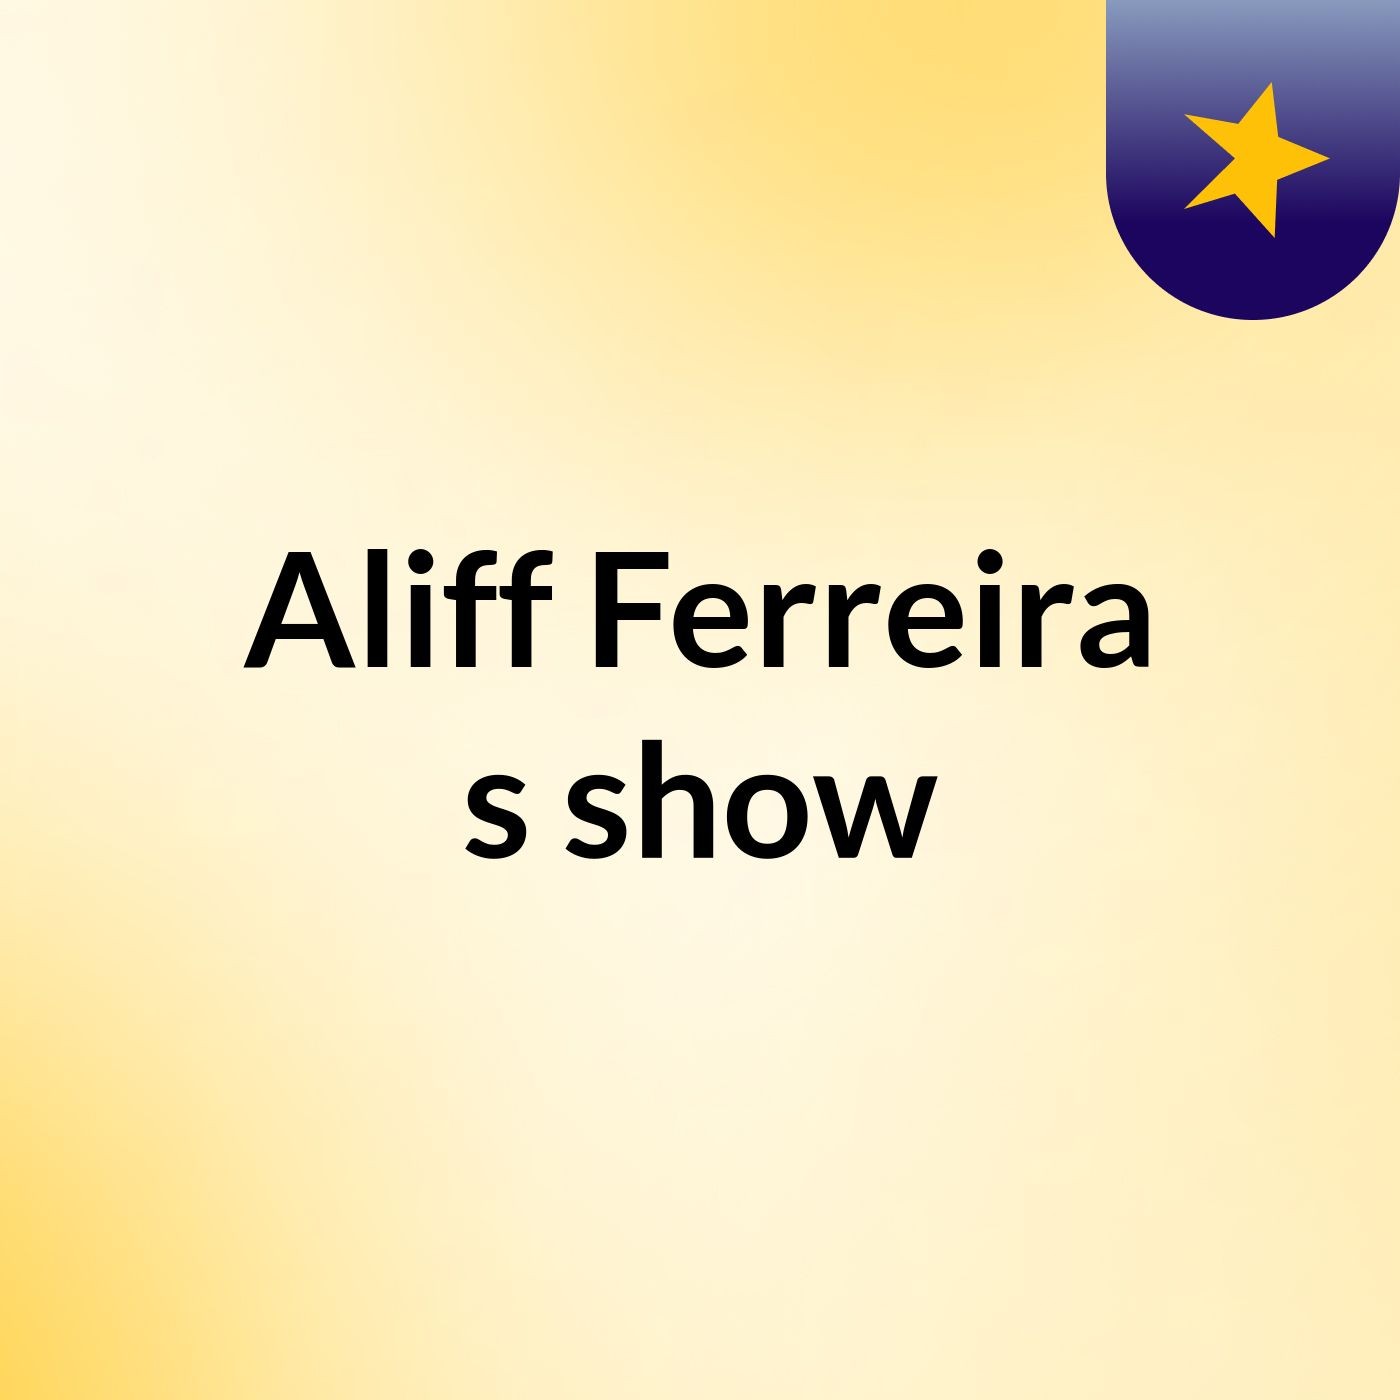 Aliff Ferreira's show